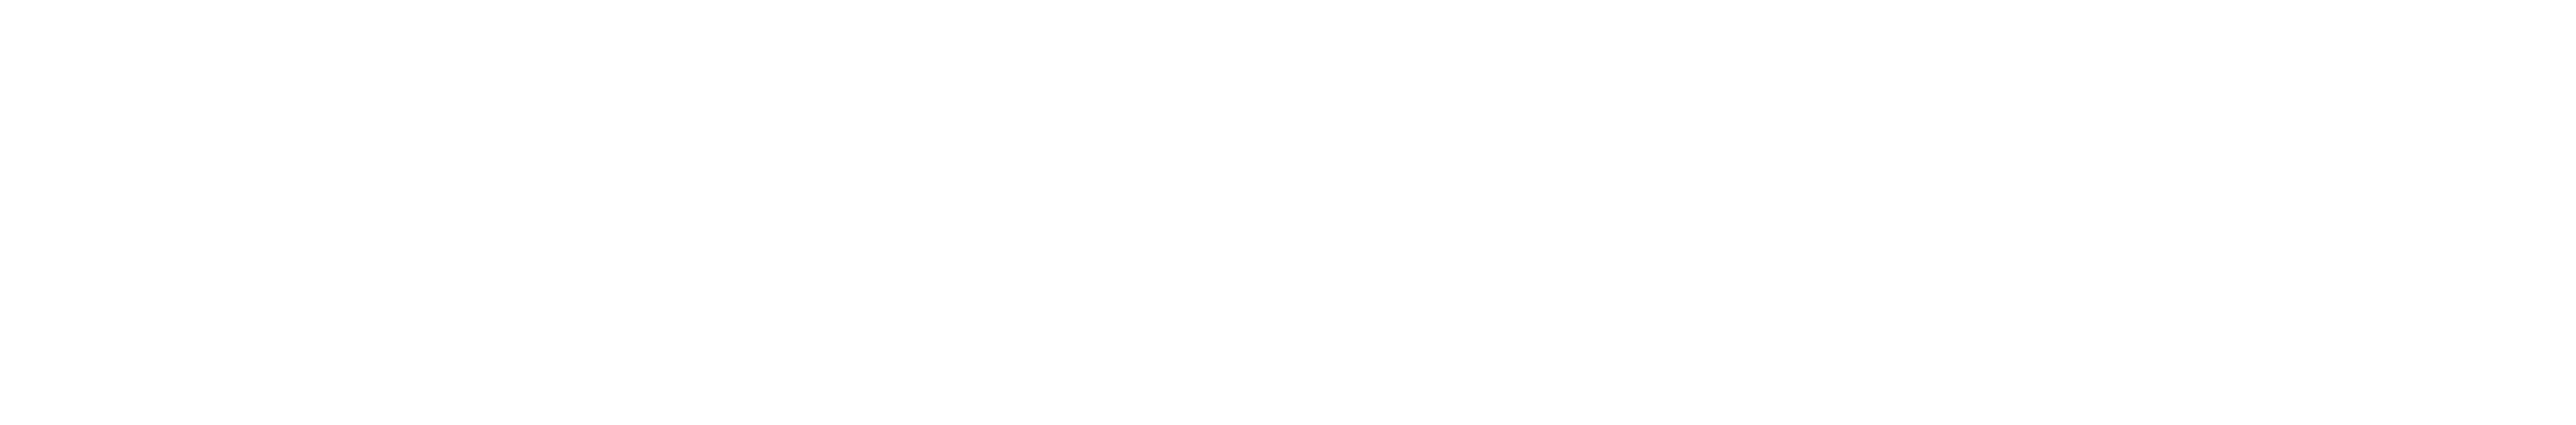 European Digital Innovation Hubs Network logo